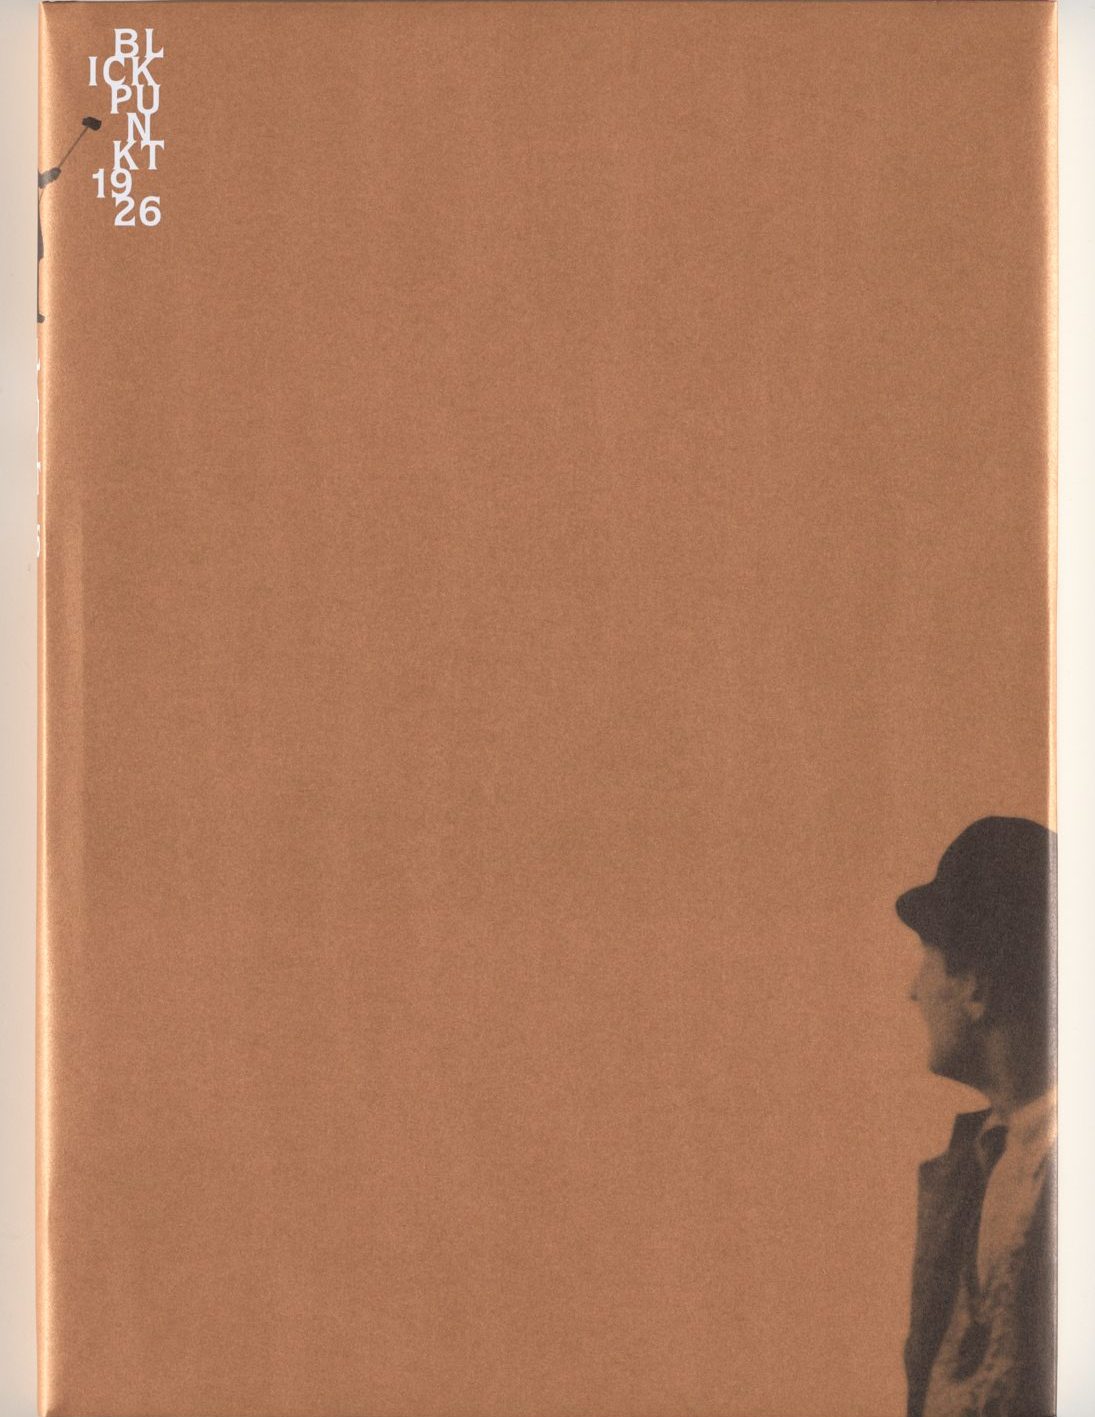 Auf bronzefarbenem Untergrund in der rechten unteren Ecke angeschnittene s/w-Fotografie des Oberkörpers eines Mannes mit Schiebermütze der nach links blickt. In der linken oberen Ecken weiße Beschriftung des getrennten Wortes: Blickpunkt 1926 (Bl-ick-pu-n-kt-19-26).